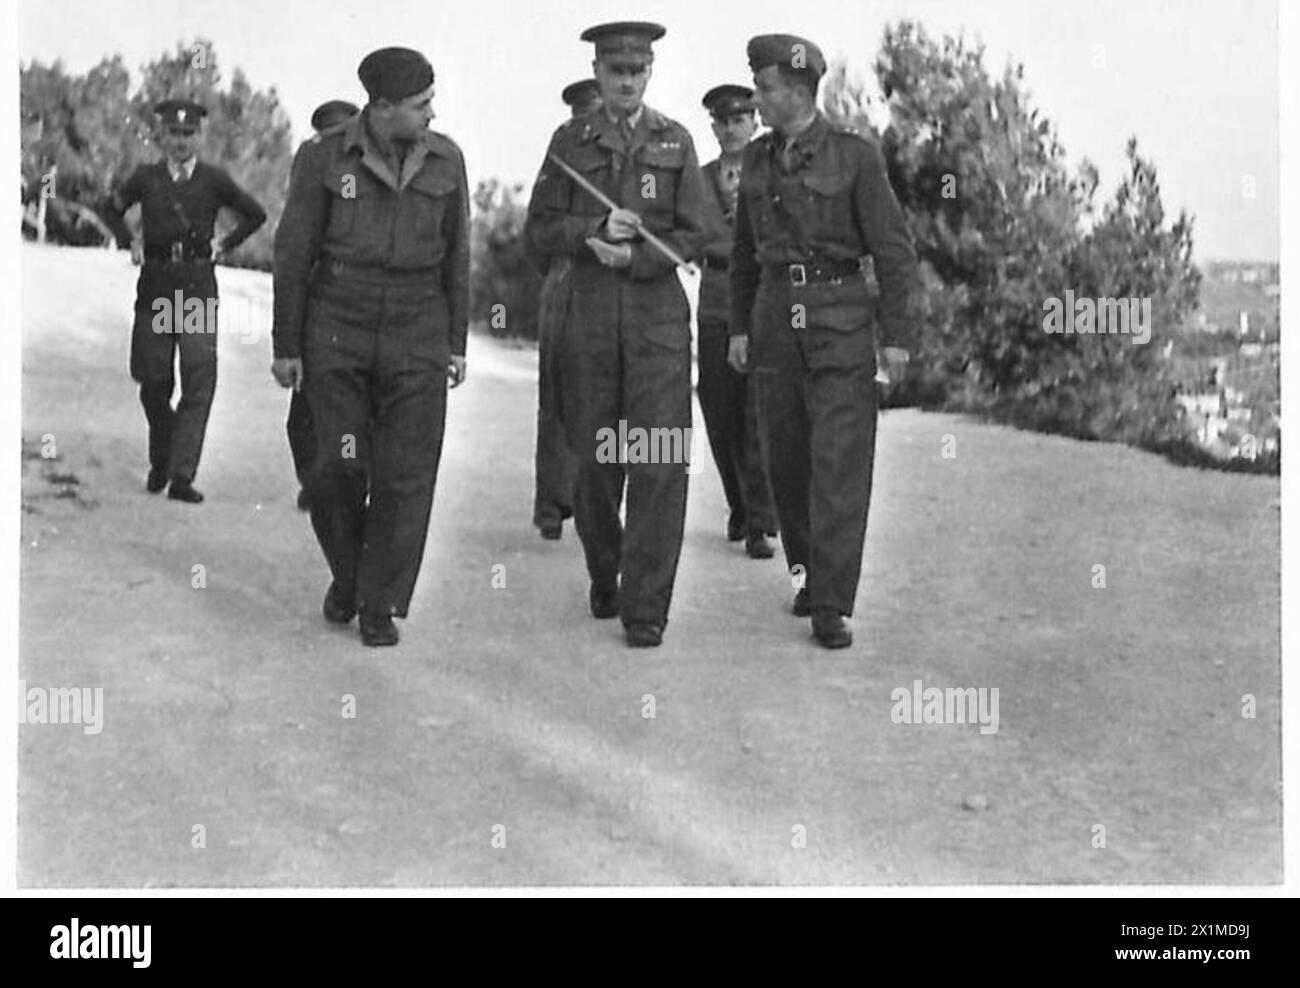 L'ESERCITO POLACCO IN MEDIO ORIENTE, 1942-1943 - il generale McConnel cammina verso il campo della parata. Sulla destra c'è il comandante della scuola, il capitano Jan Łabanowski. Il governo della Palestina, il maggiore generale Douglas Fitzgerald McConnel, visitò la scuola maschile polacca di Nazareth. Qui i ragazzi rifugiati polacchi (orfani deportati nel 1939-1940 in Unione Sovietica dall'NKVD e evacuati in Persia e Palestina dopo l'accordo Sikorski-Mayski) sono istruiti, in gran parte in disciplina, ma anche nelle tre "R”. Sono vestiti in uniforme e sono orgogliosi di essere sempre intelligenti. Le immagini le mostrano Foto Stock